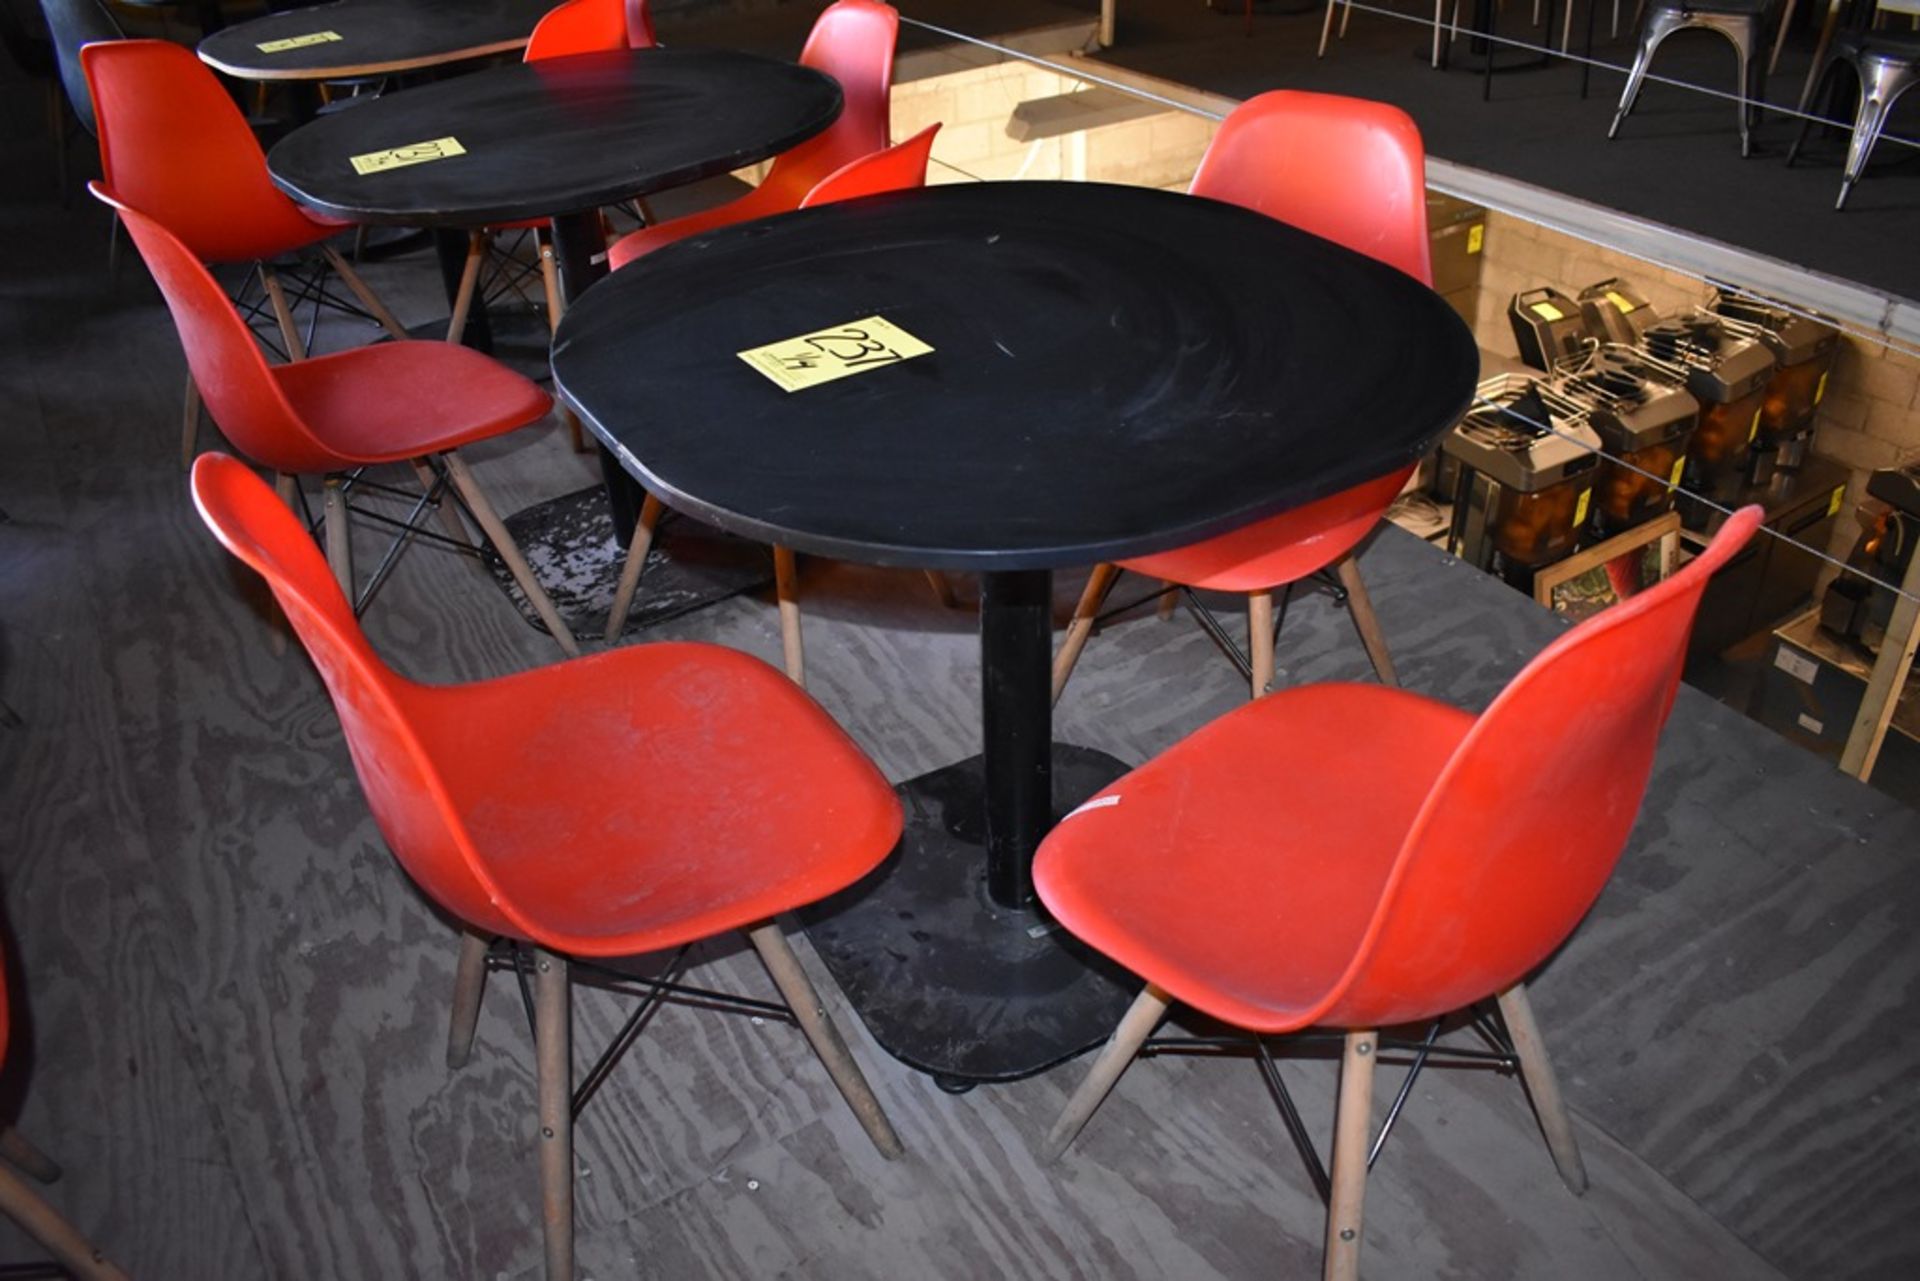 Cuatro mesas cuadradas en melamina con estructura metálica (80 x 75 cm)